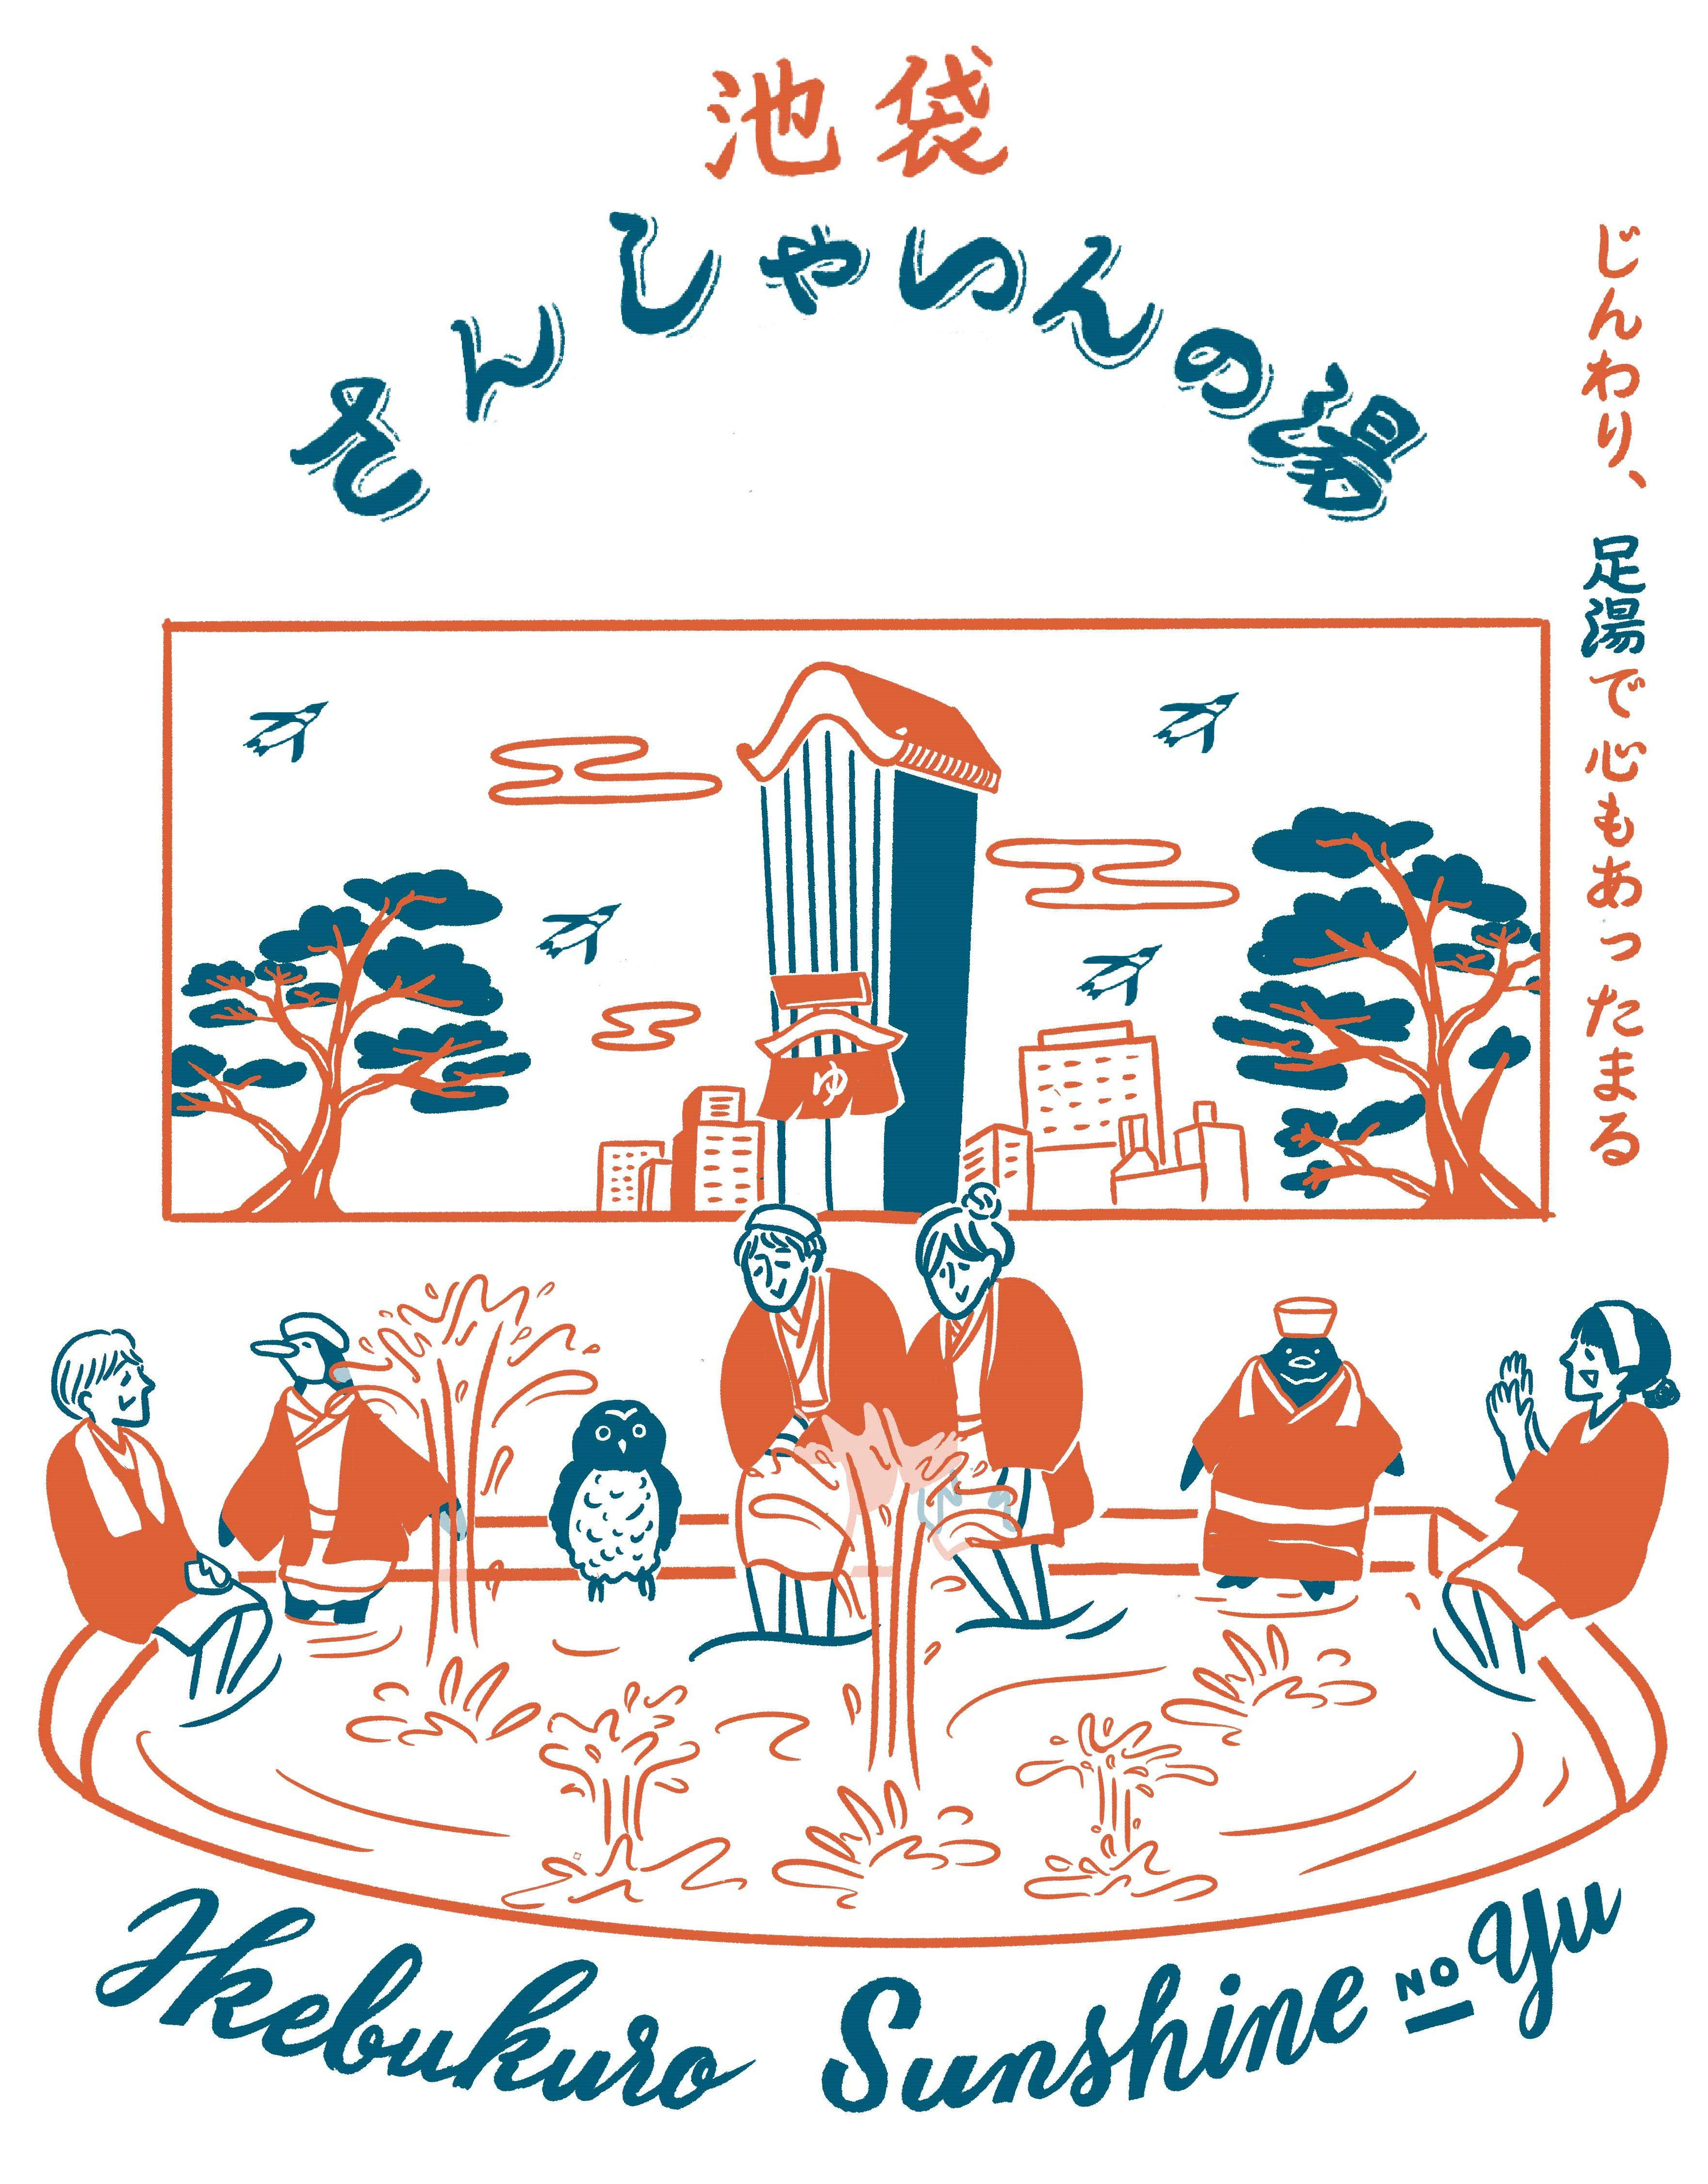 11月26日是在陽光城噴泉廣場舉行的 好 11 浴 26 日 康復足浴 Sanshain No Yu Kokosil池袋